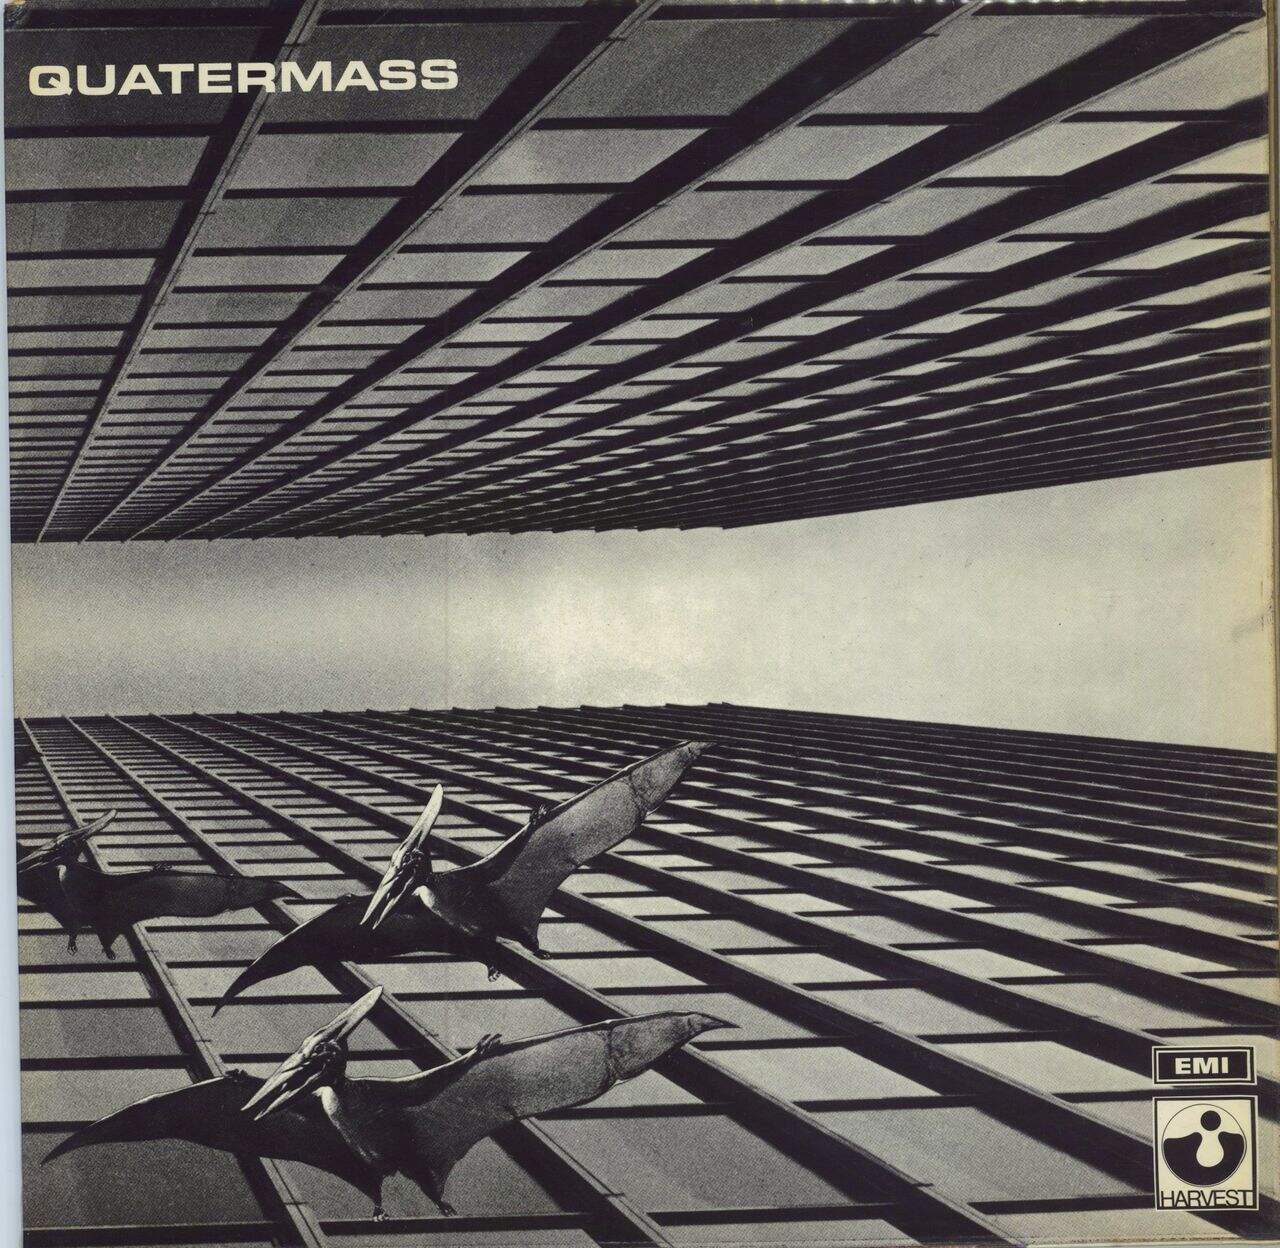 Quatermass Quatermass - 1st - EX UK Vinyl LP